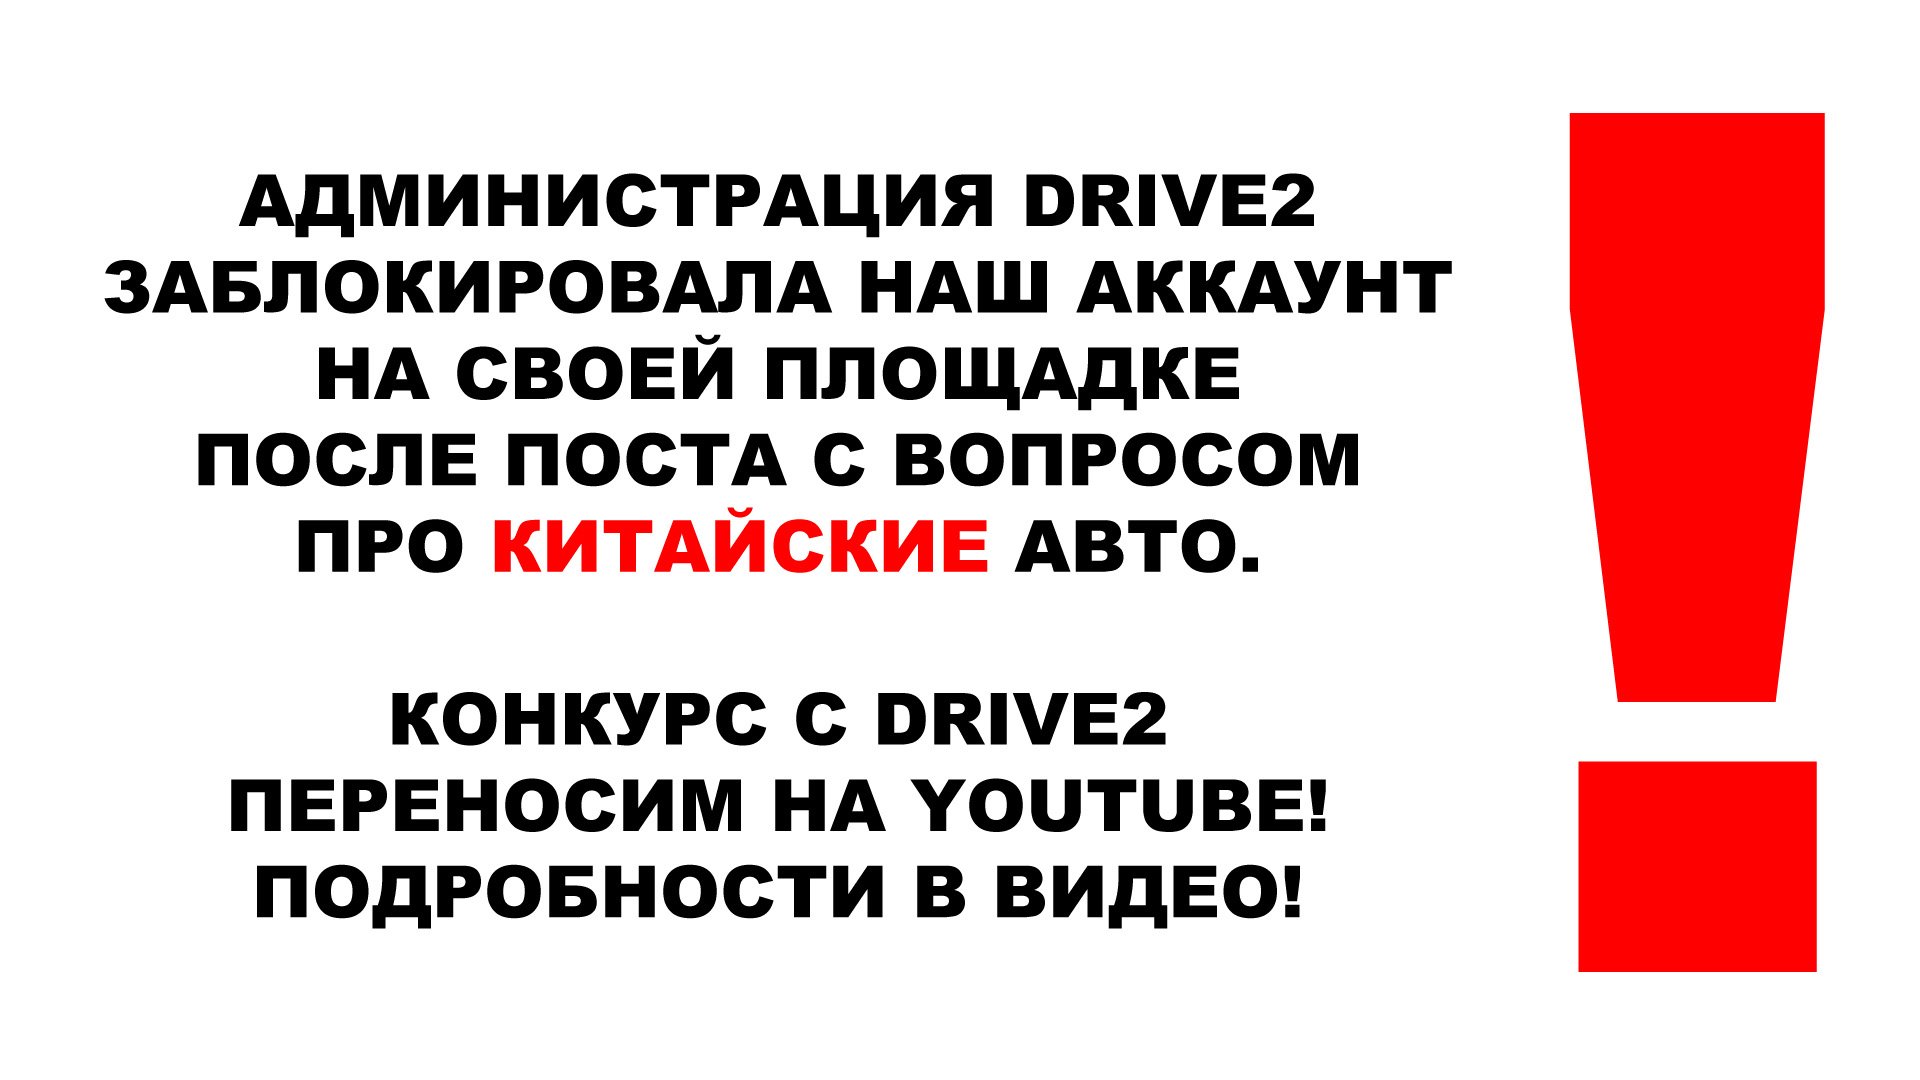 Заблокировали на DRIVE2 после поста про КИТАЙСКИЕ АВТО. Конкурс переносим на YOUTUBE Всё в описании!